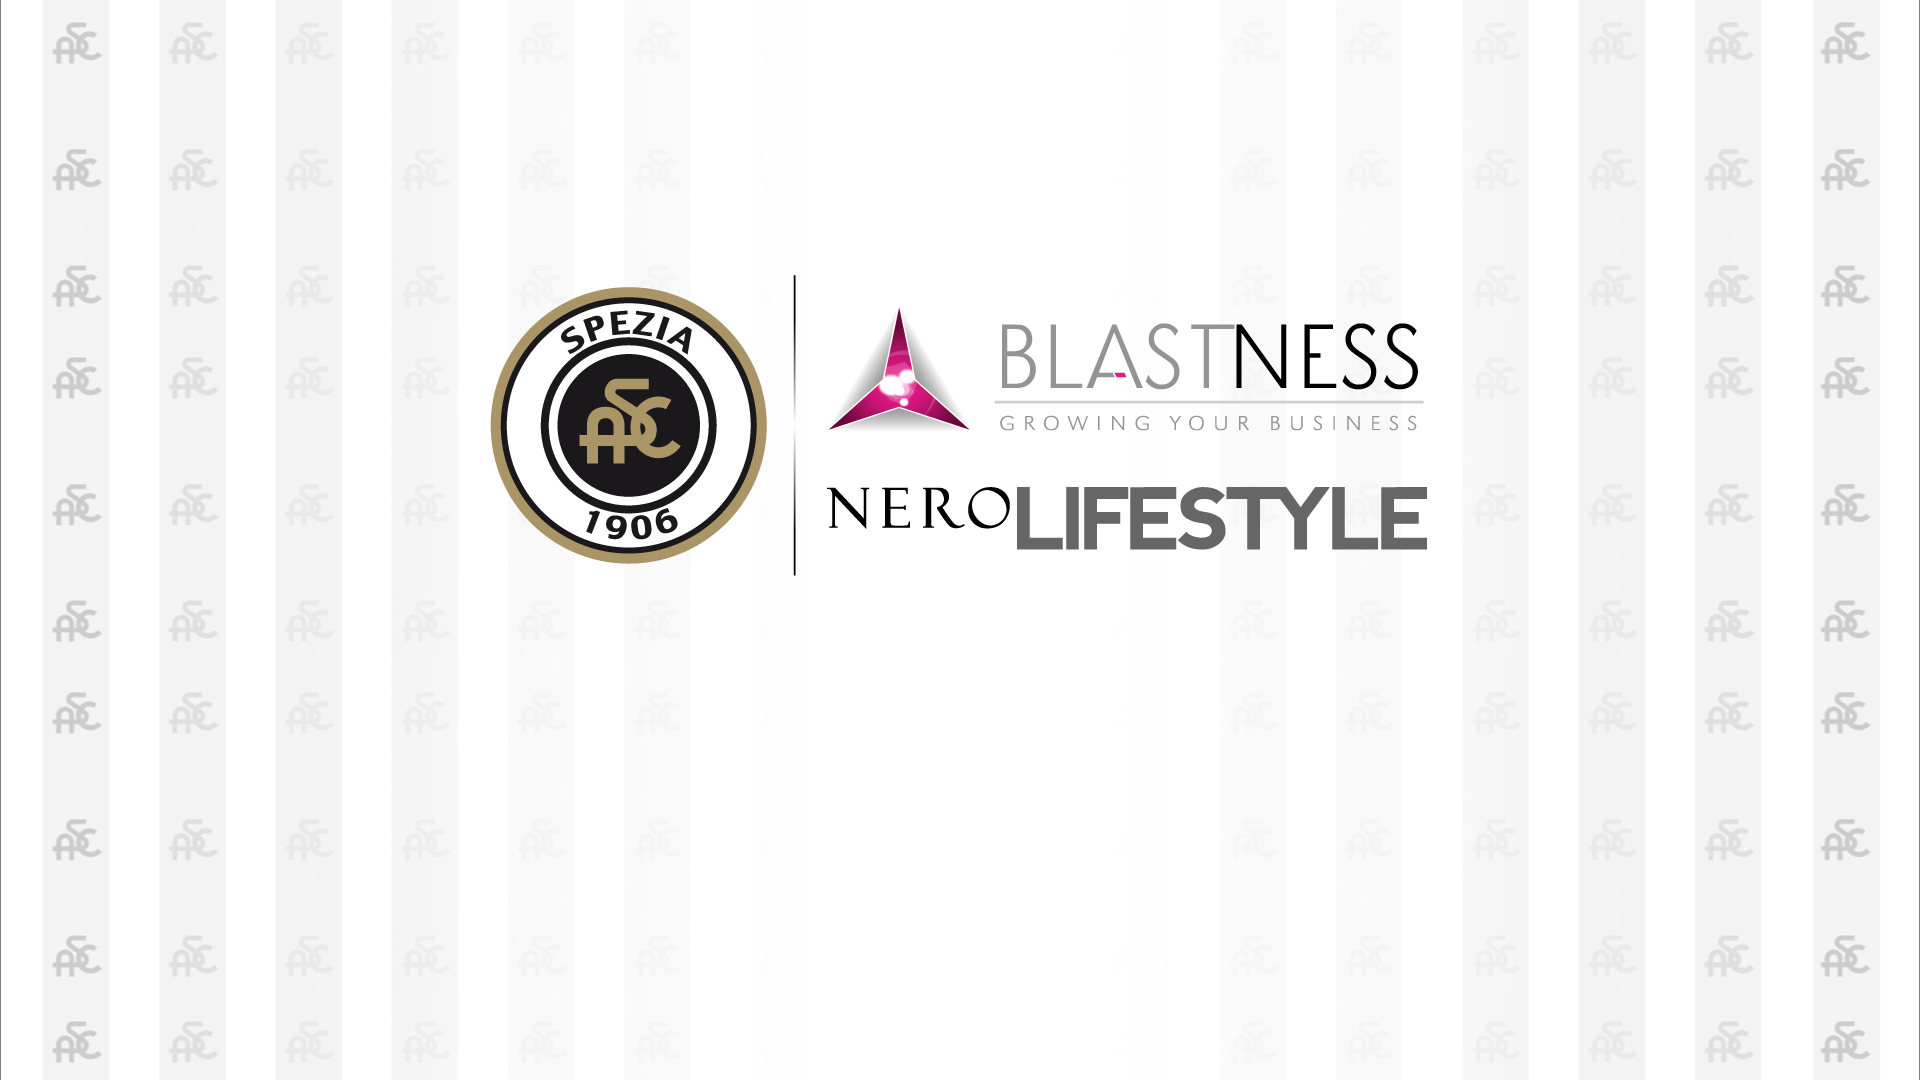 Blastness e Nero Lifestyle si uniscono alla famiglia Spezia Calcio e diventano Top Sponsor